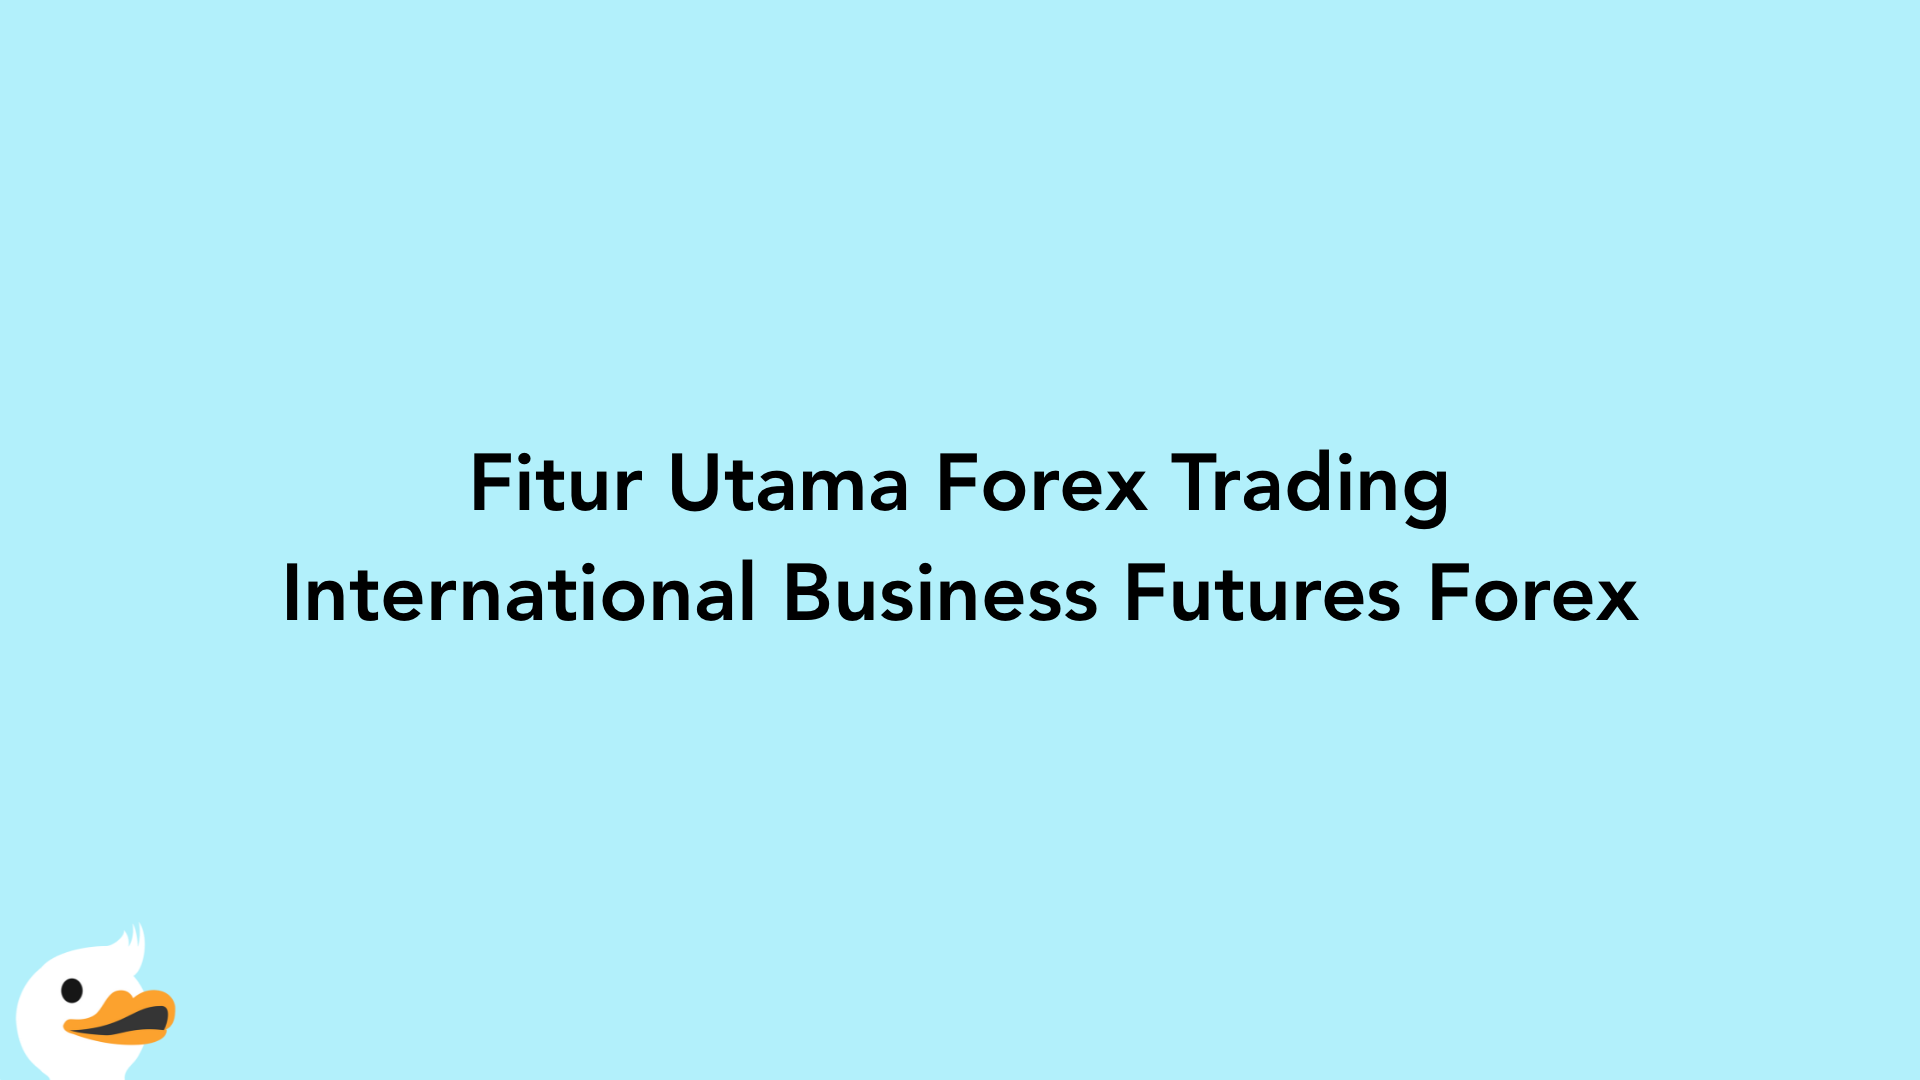 Fitur Utama Forex Trading International Business Futures Forex